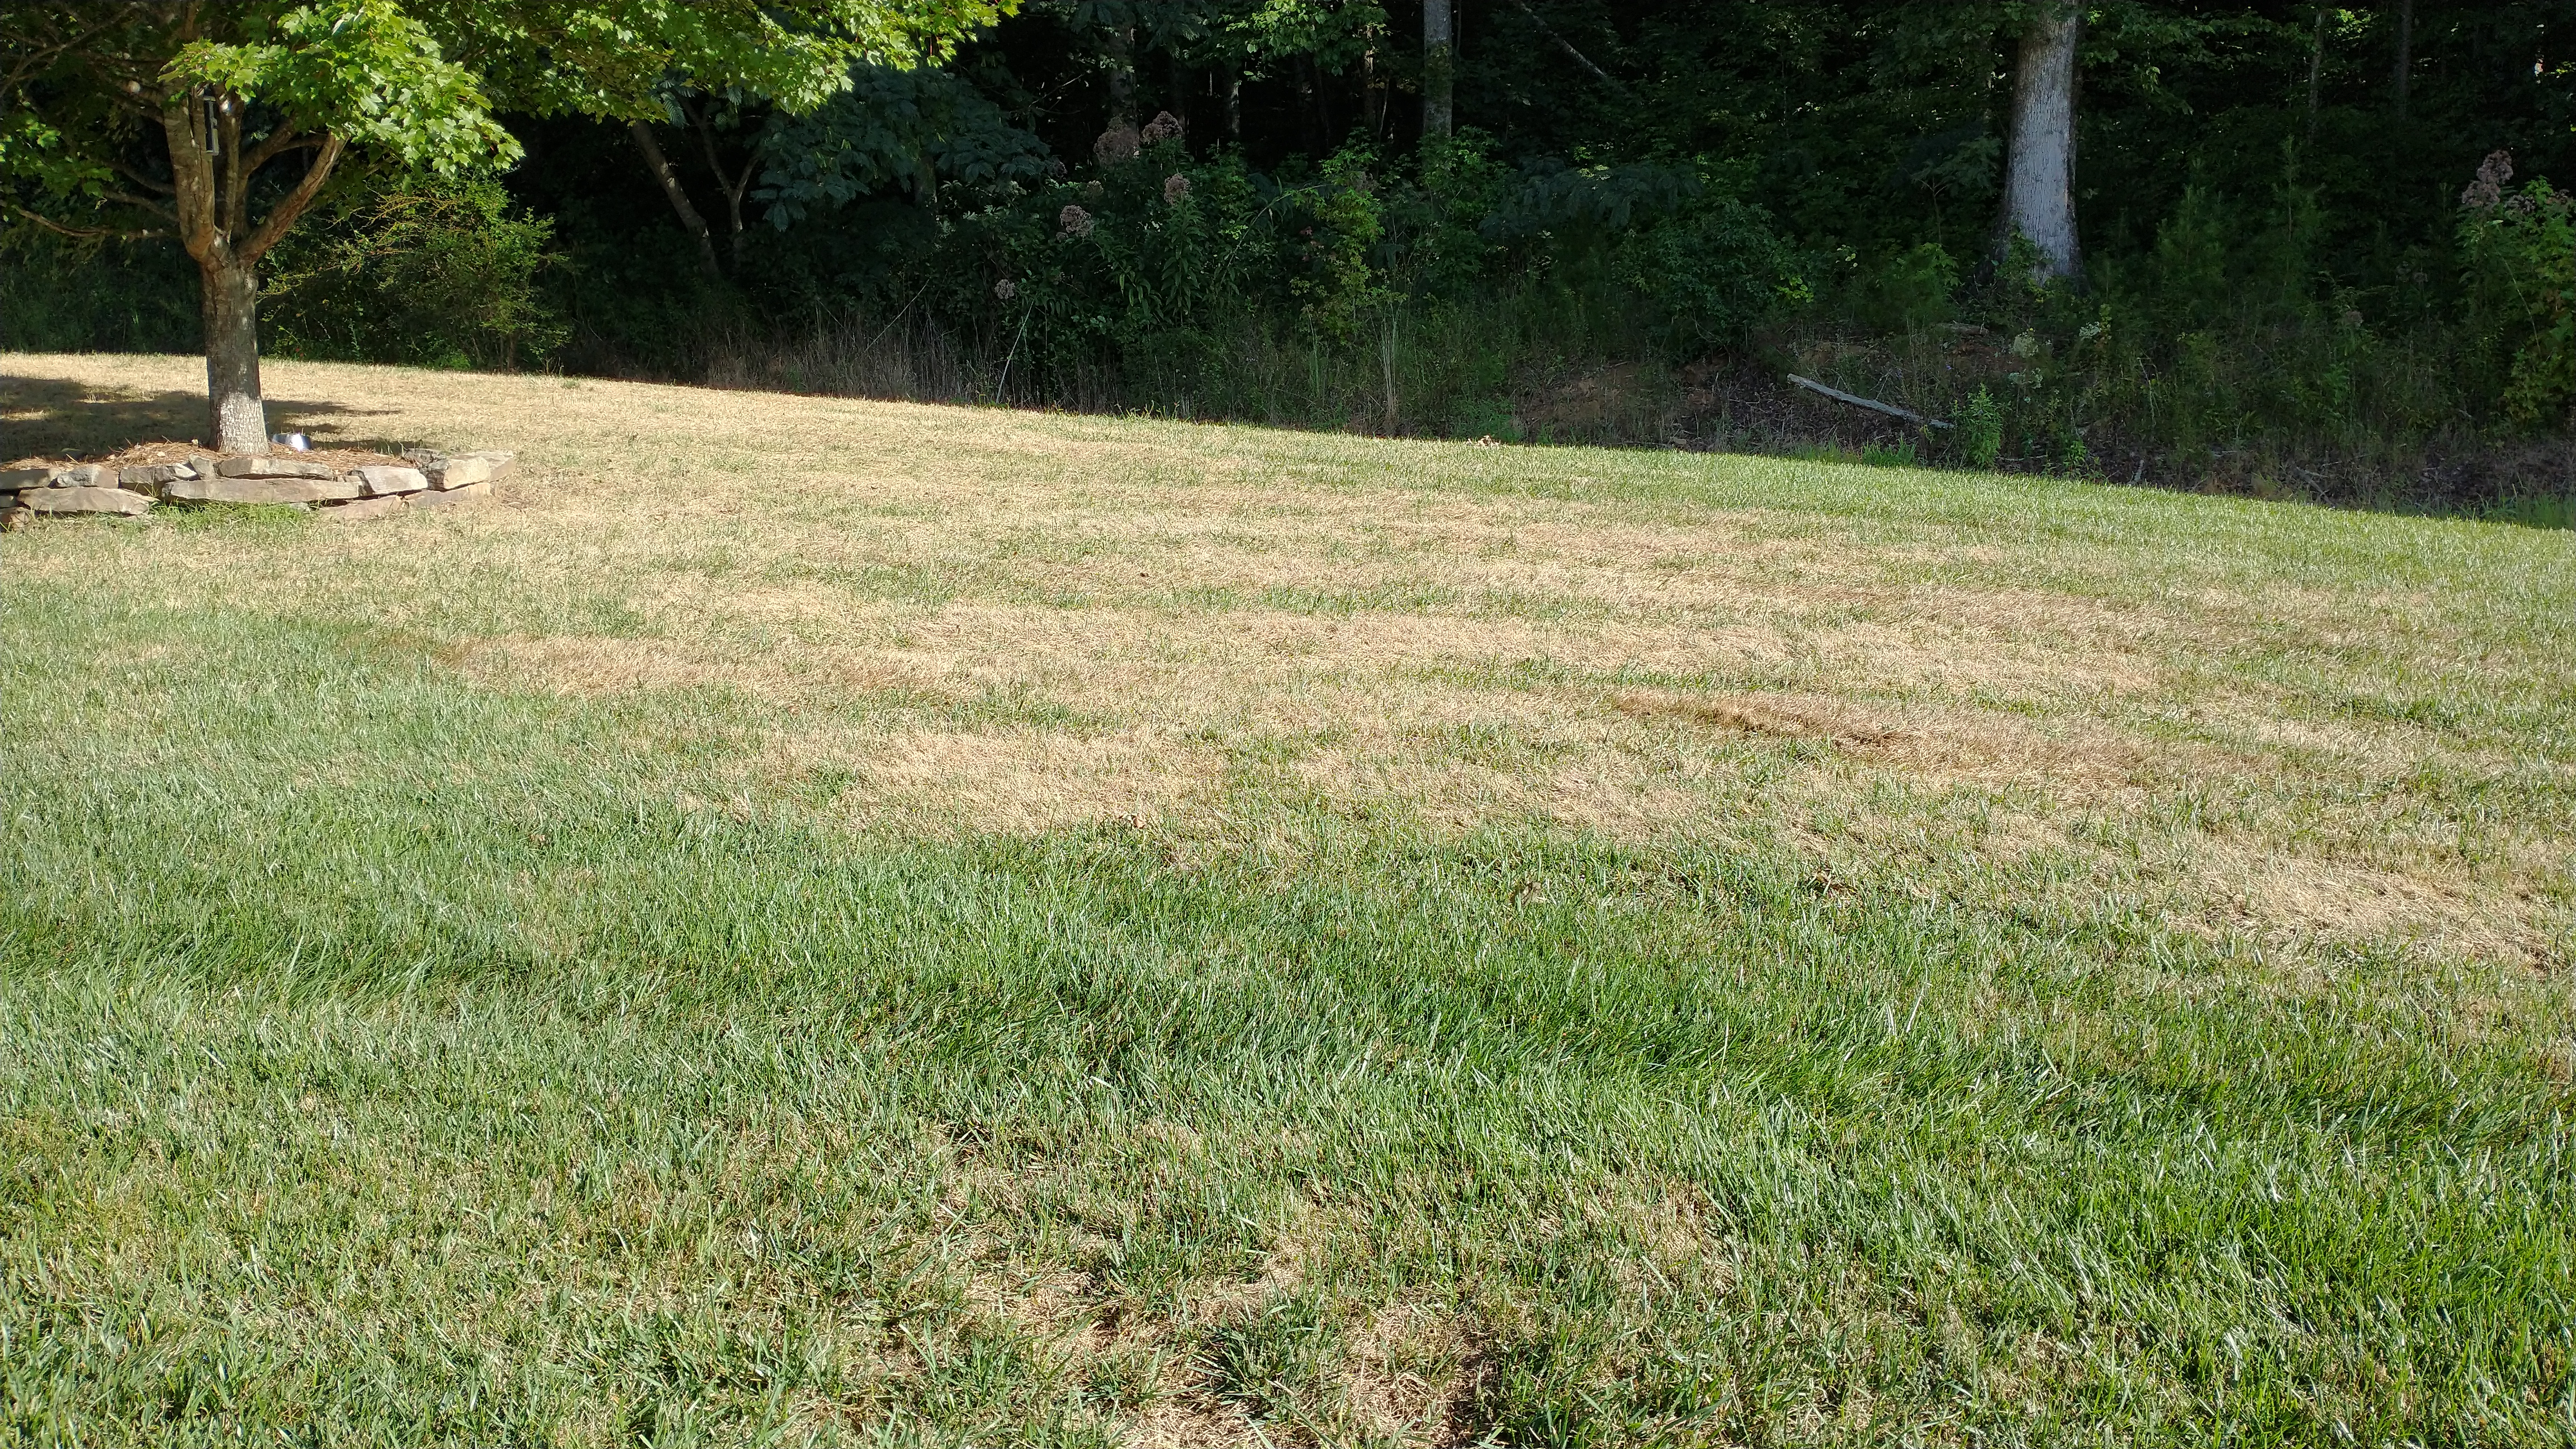 fall army worm damage in lawn